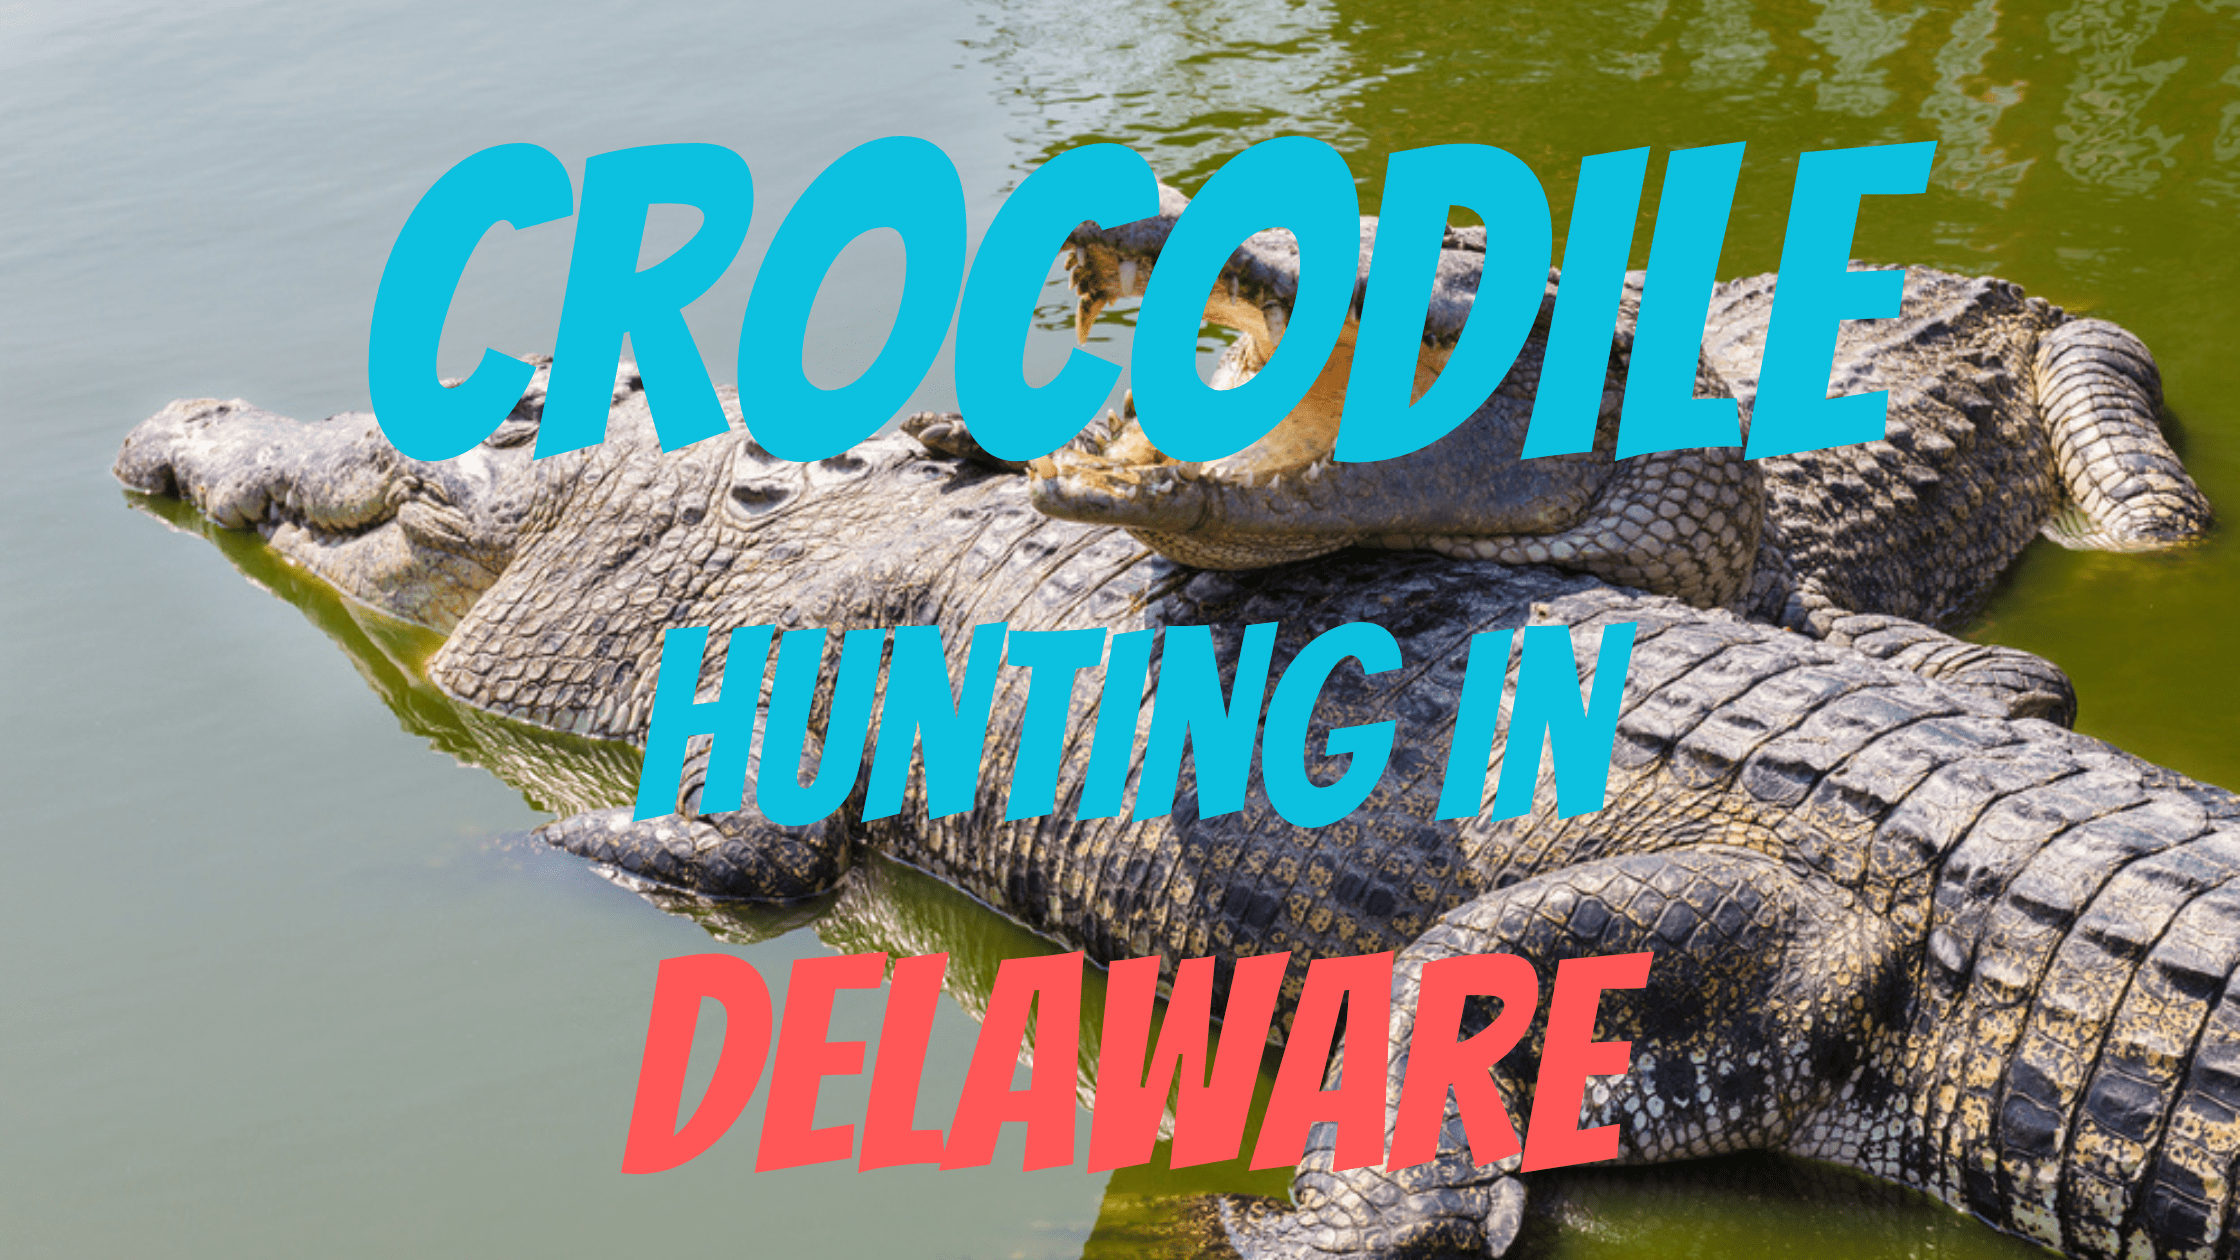 Crocodile Hunting in Delaware